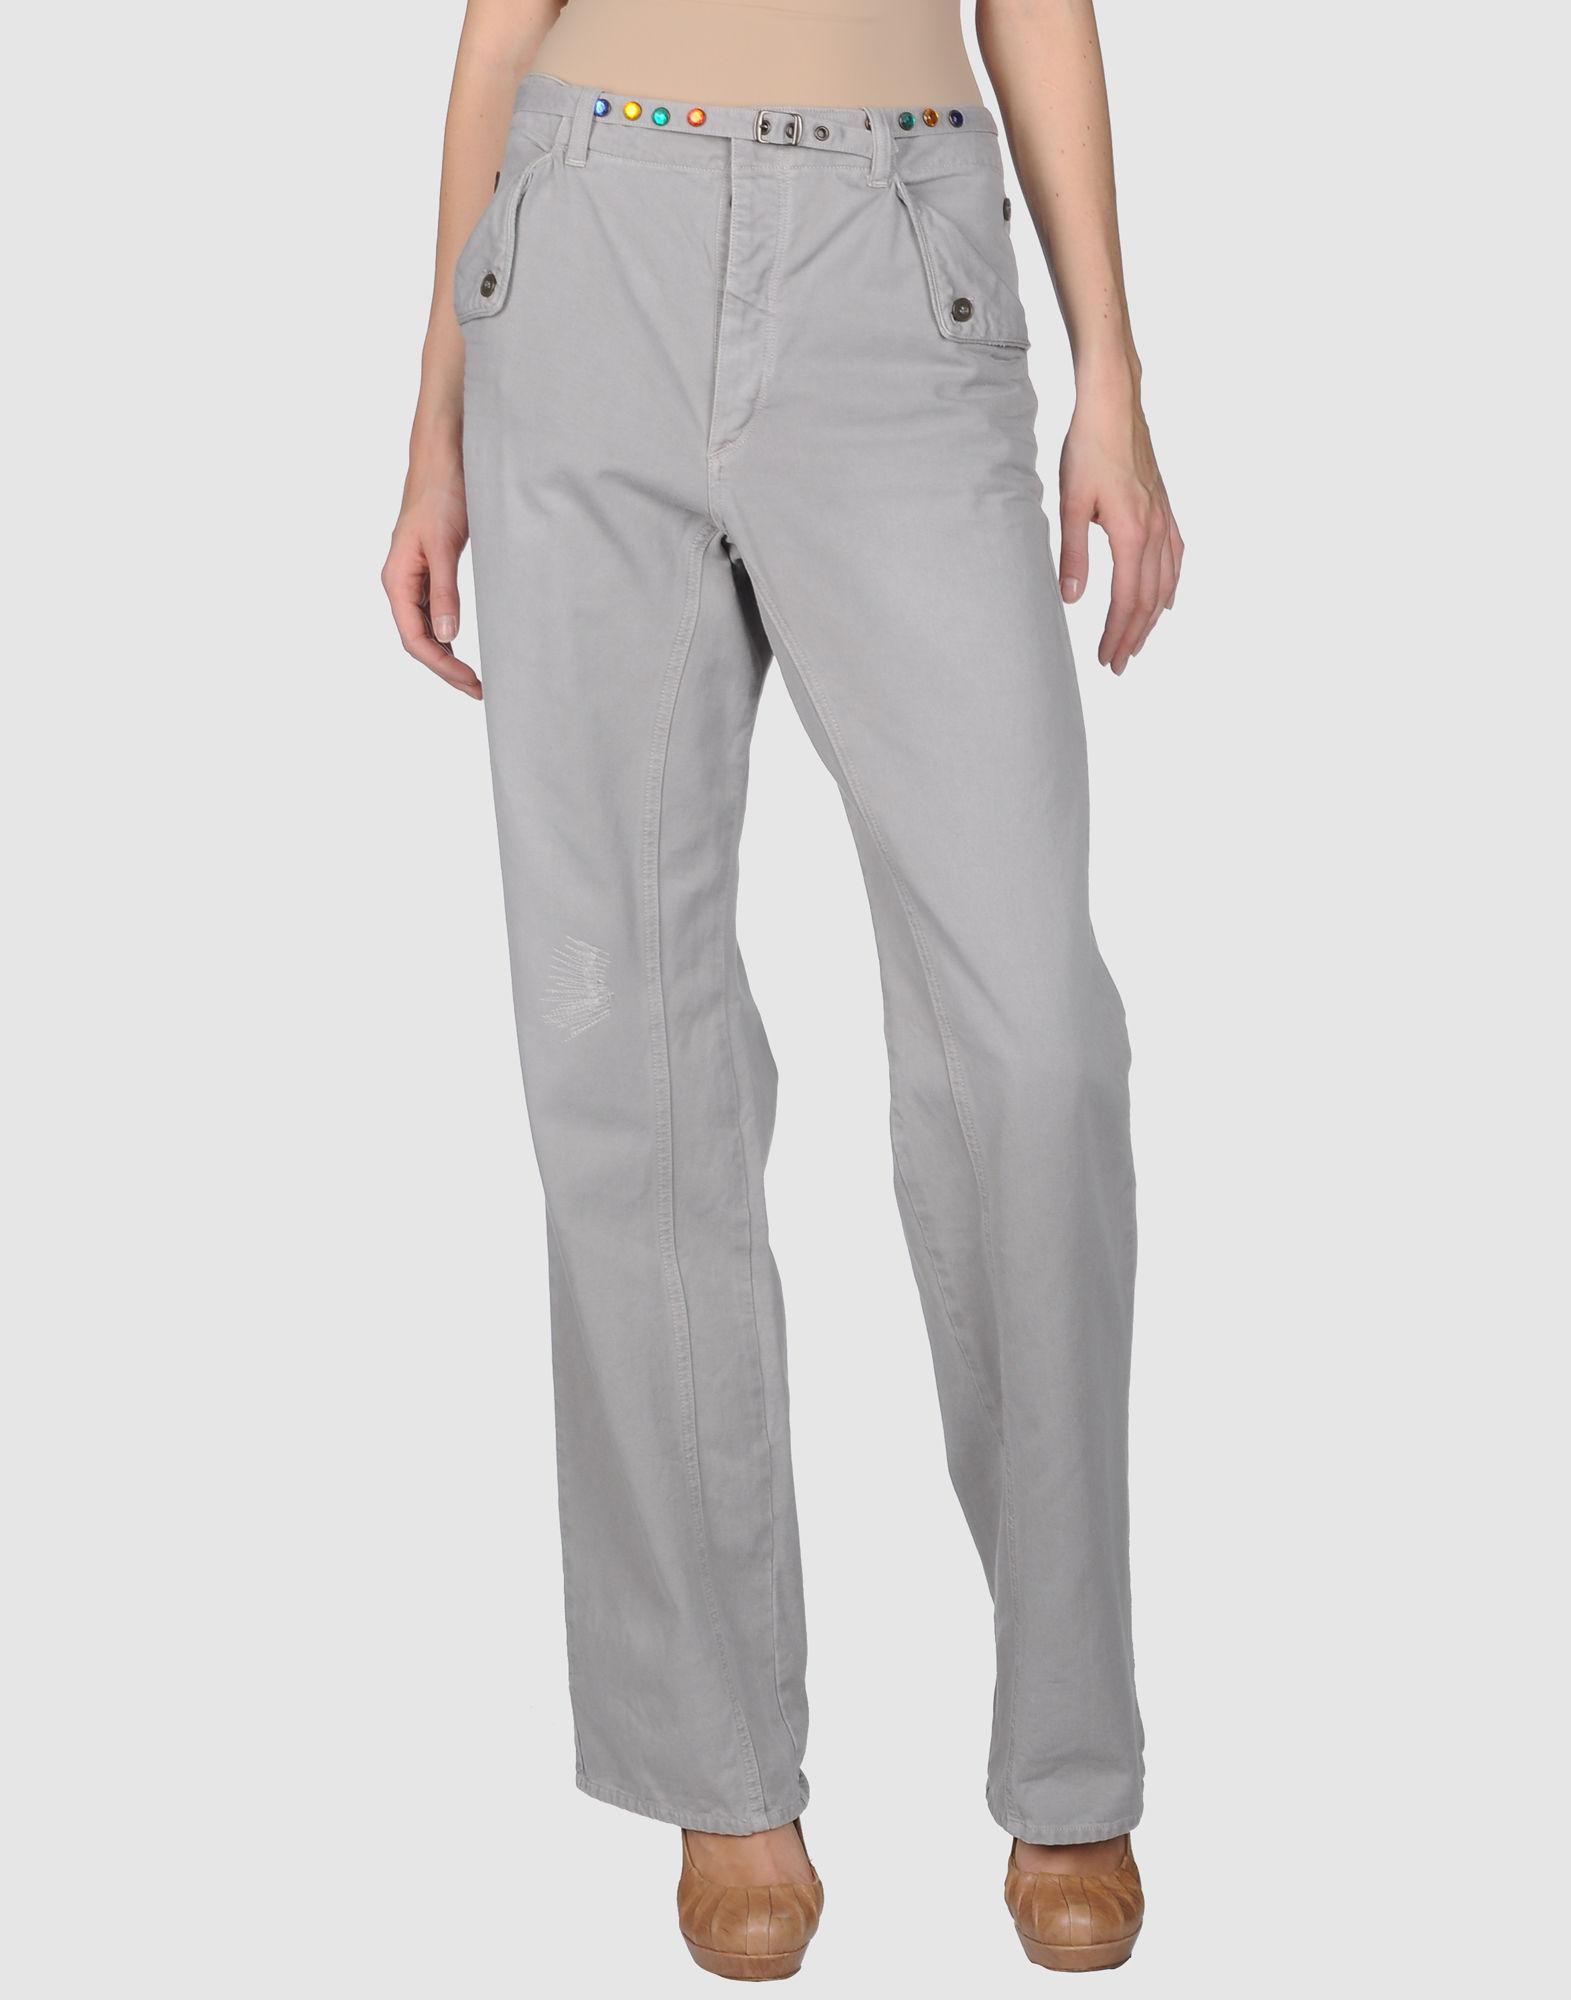 Lyst - Golden Goose Deluxe Brand Casual Pants in Gray